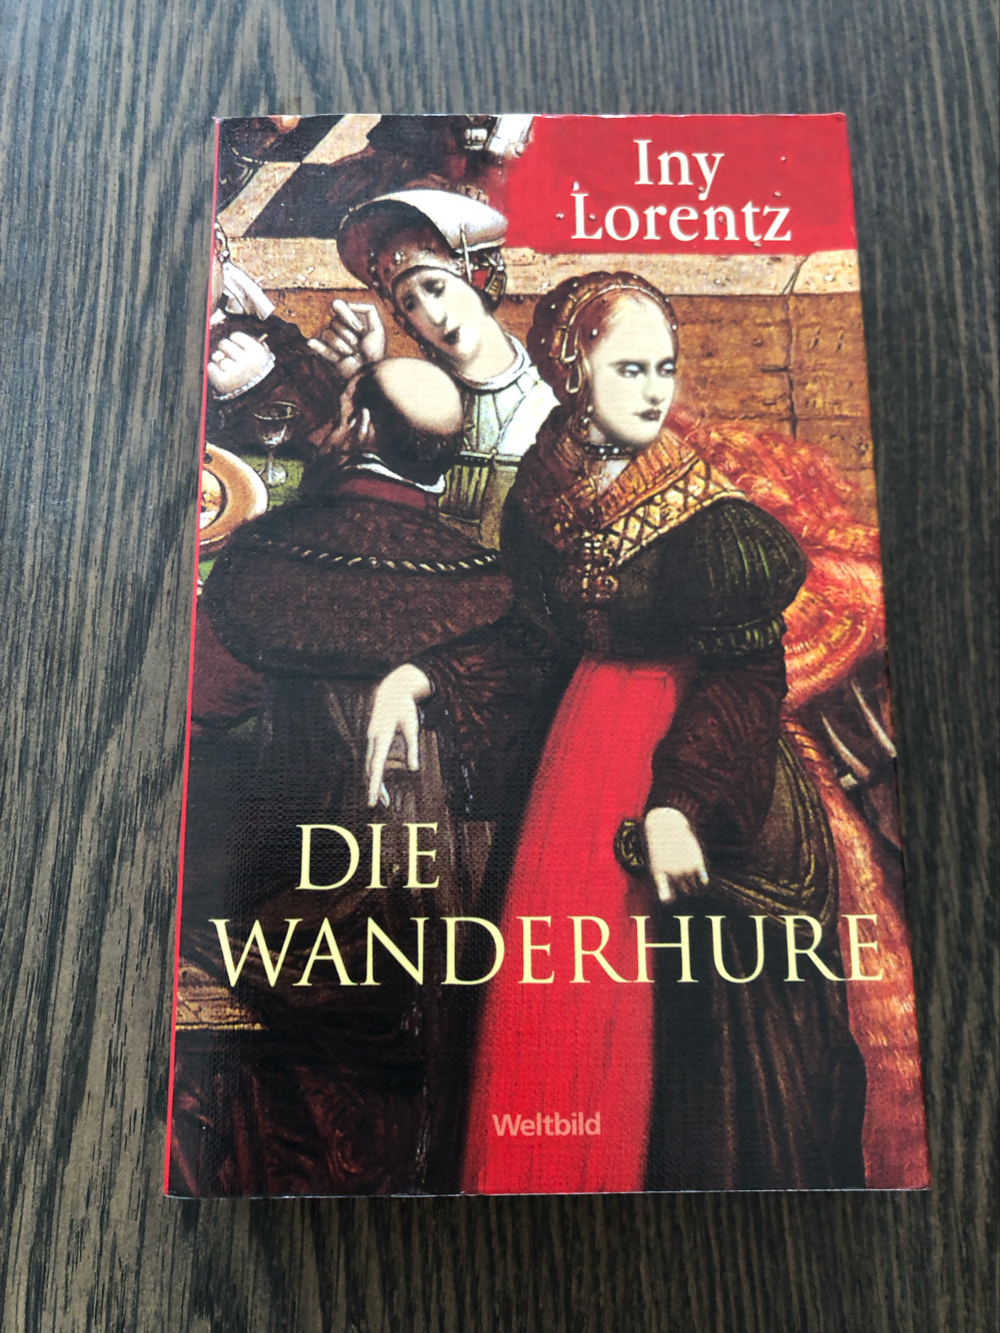 Die Wanderhure, Iny Lorentz